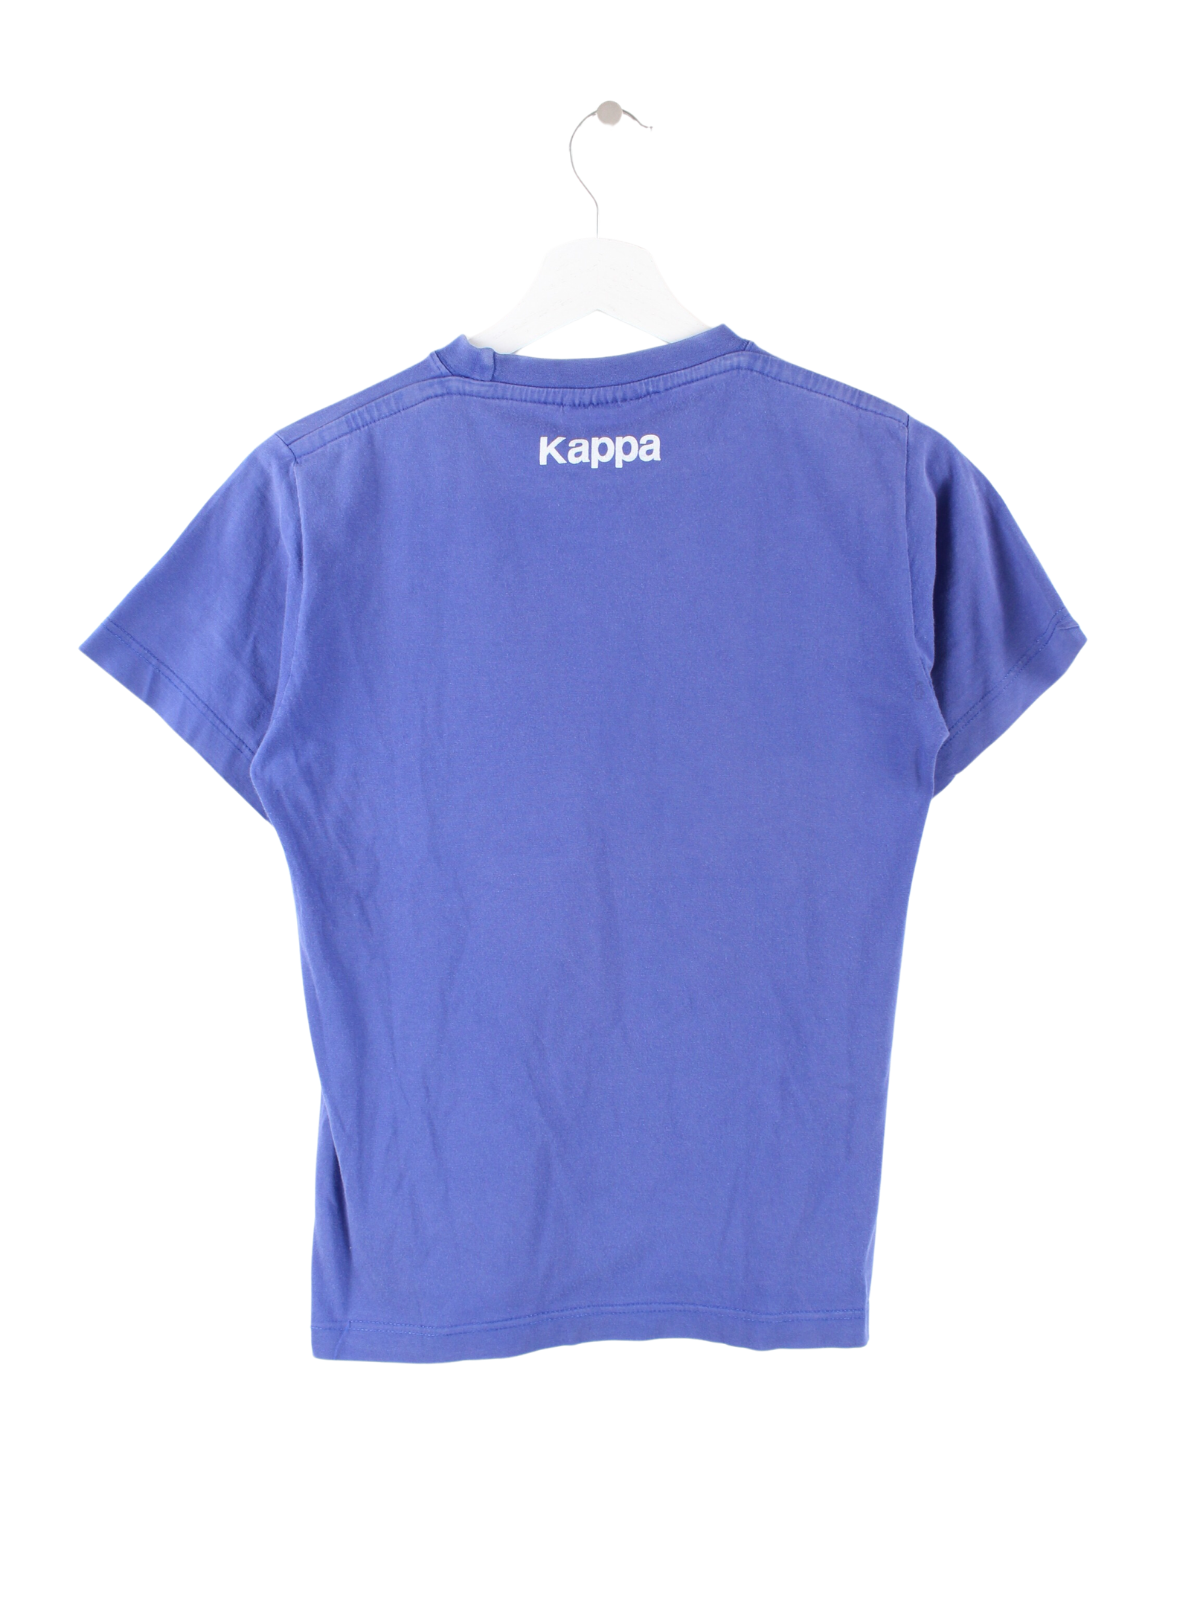 Kappa Juventus T-Shirt Blau XS